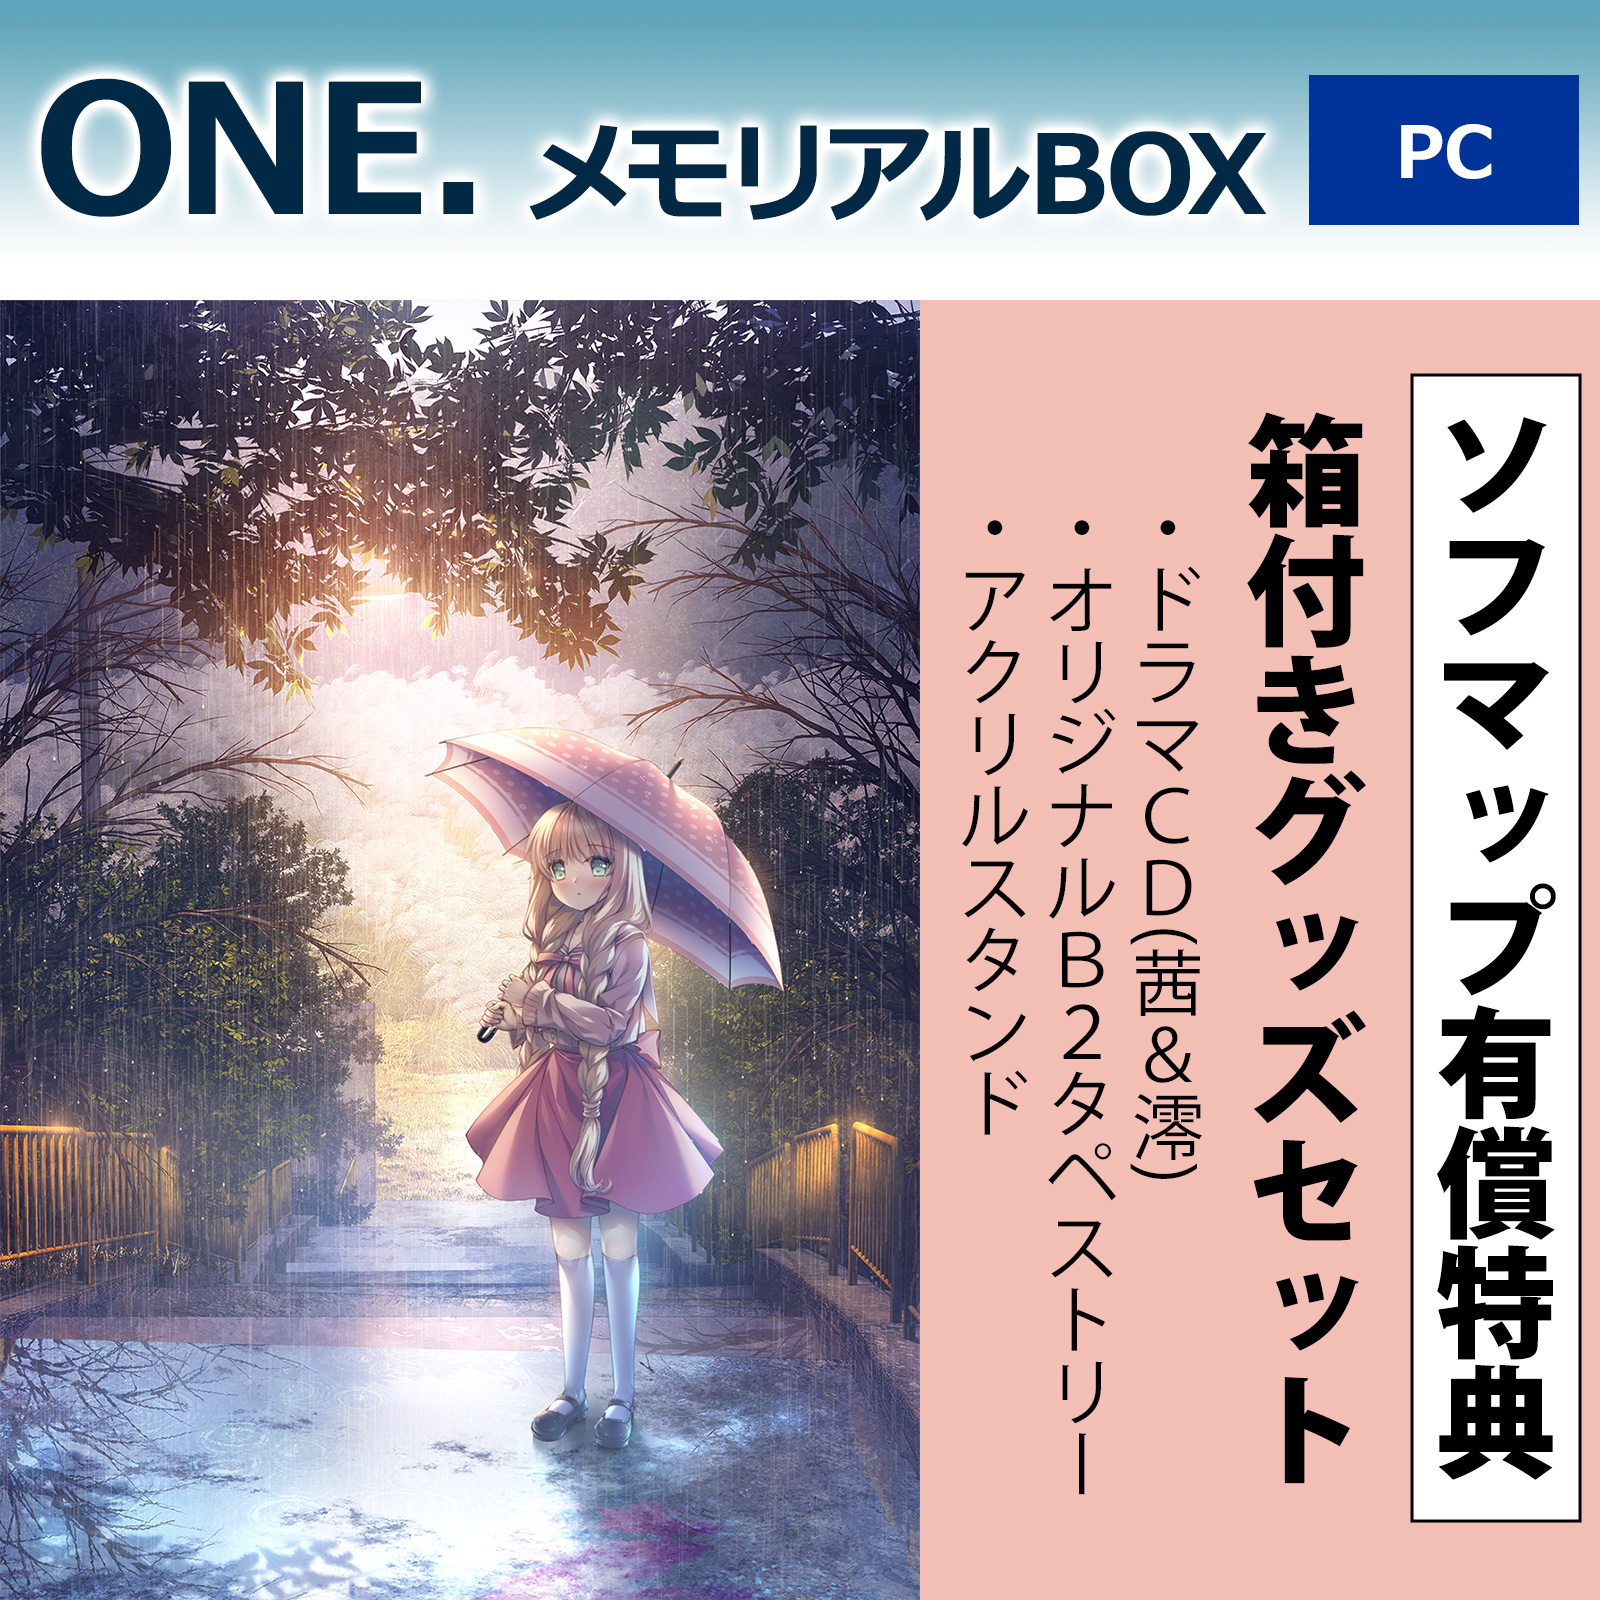 【特典対象】 ONE. メモリアルBOX【PCゲームソフト】 ◆ソフマップ有償特典「箱付きグッズセット」